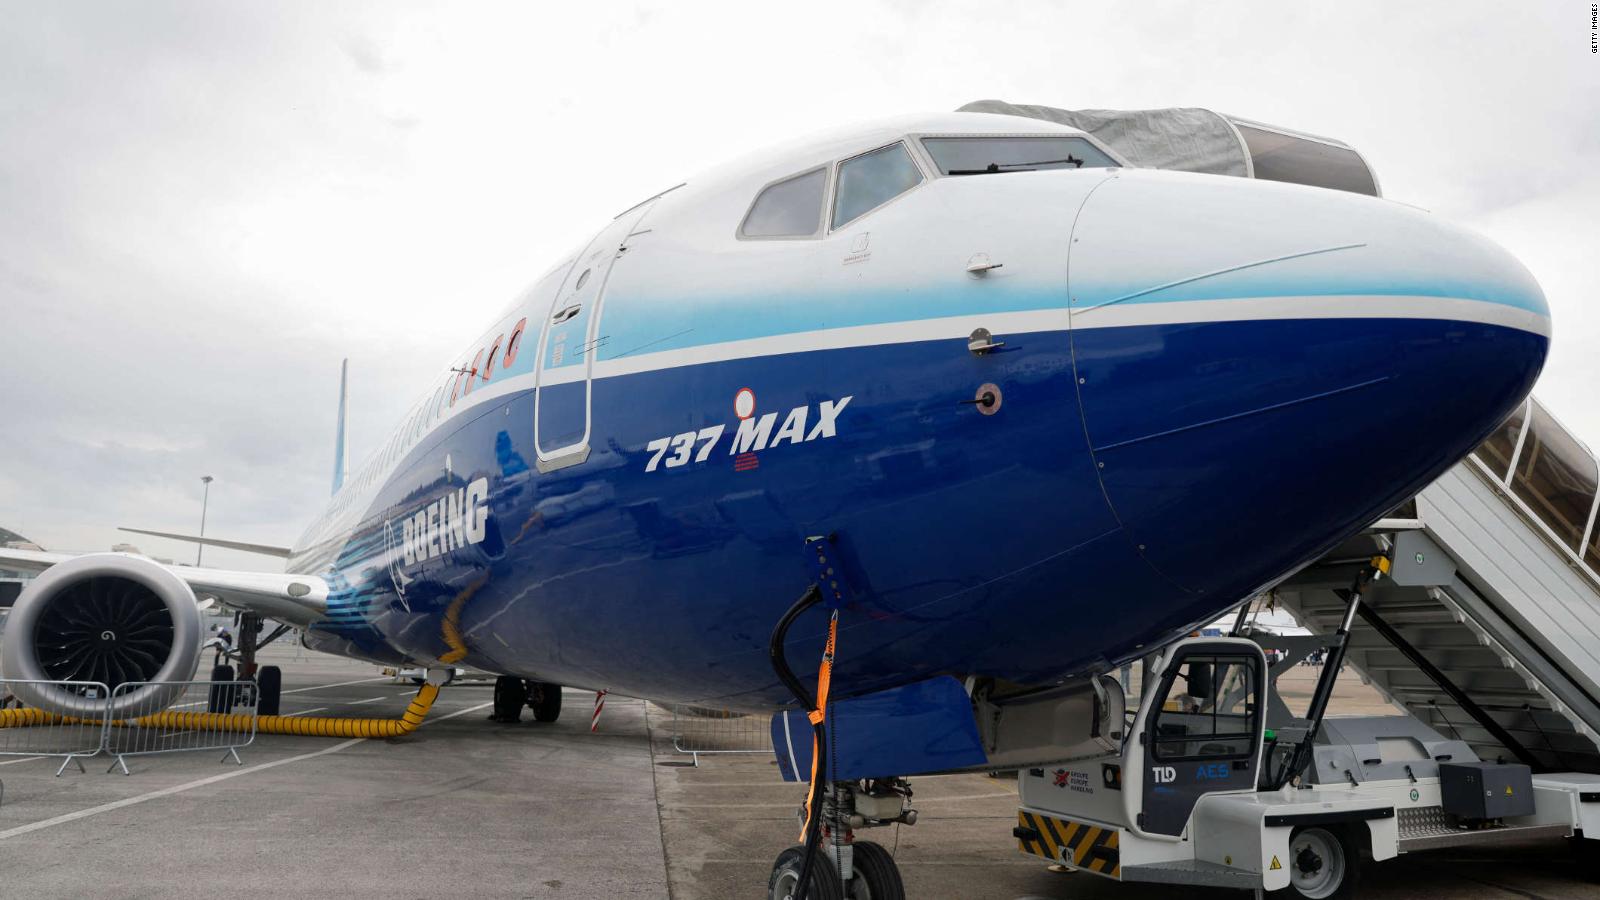 Passageiros se recusam voar em Boeing 737 Max e pedem suspensão de viagem